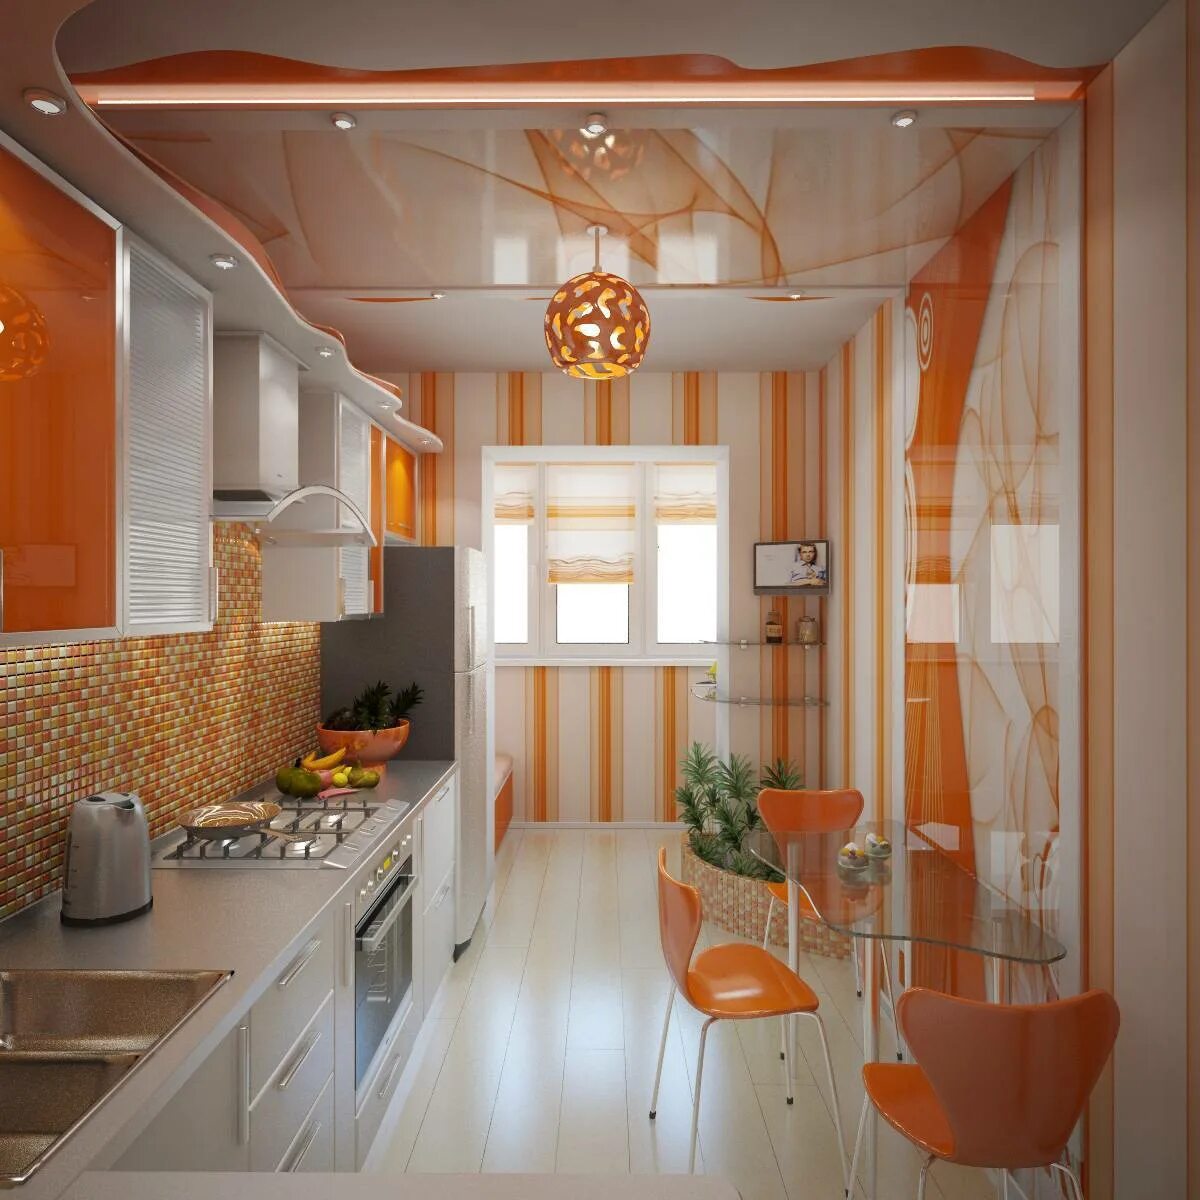 Кухни оранжевого цвета. Оранжевая кухня в интерьере. Оранжевый цвет в интерьере кухни. Кухня ворандевых тоонах. Новые ремонты кухни